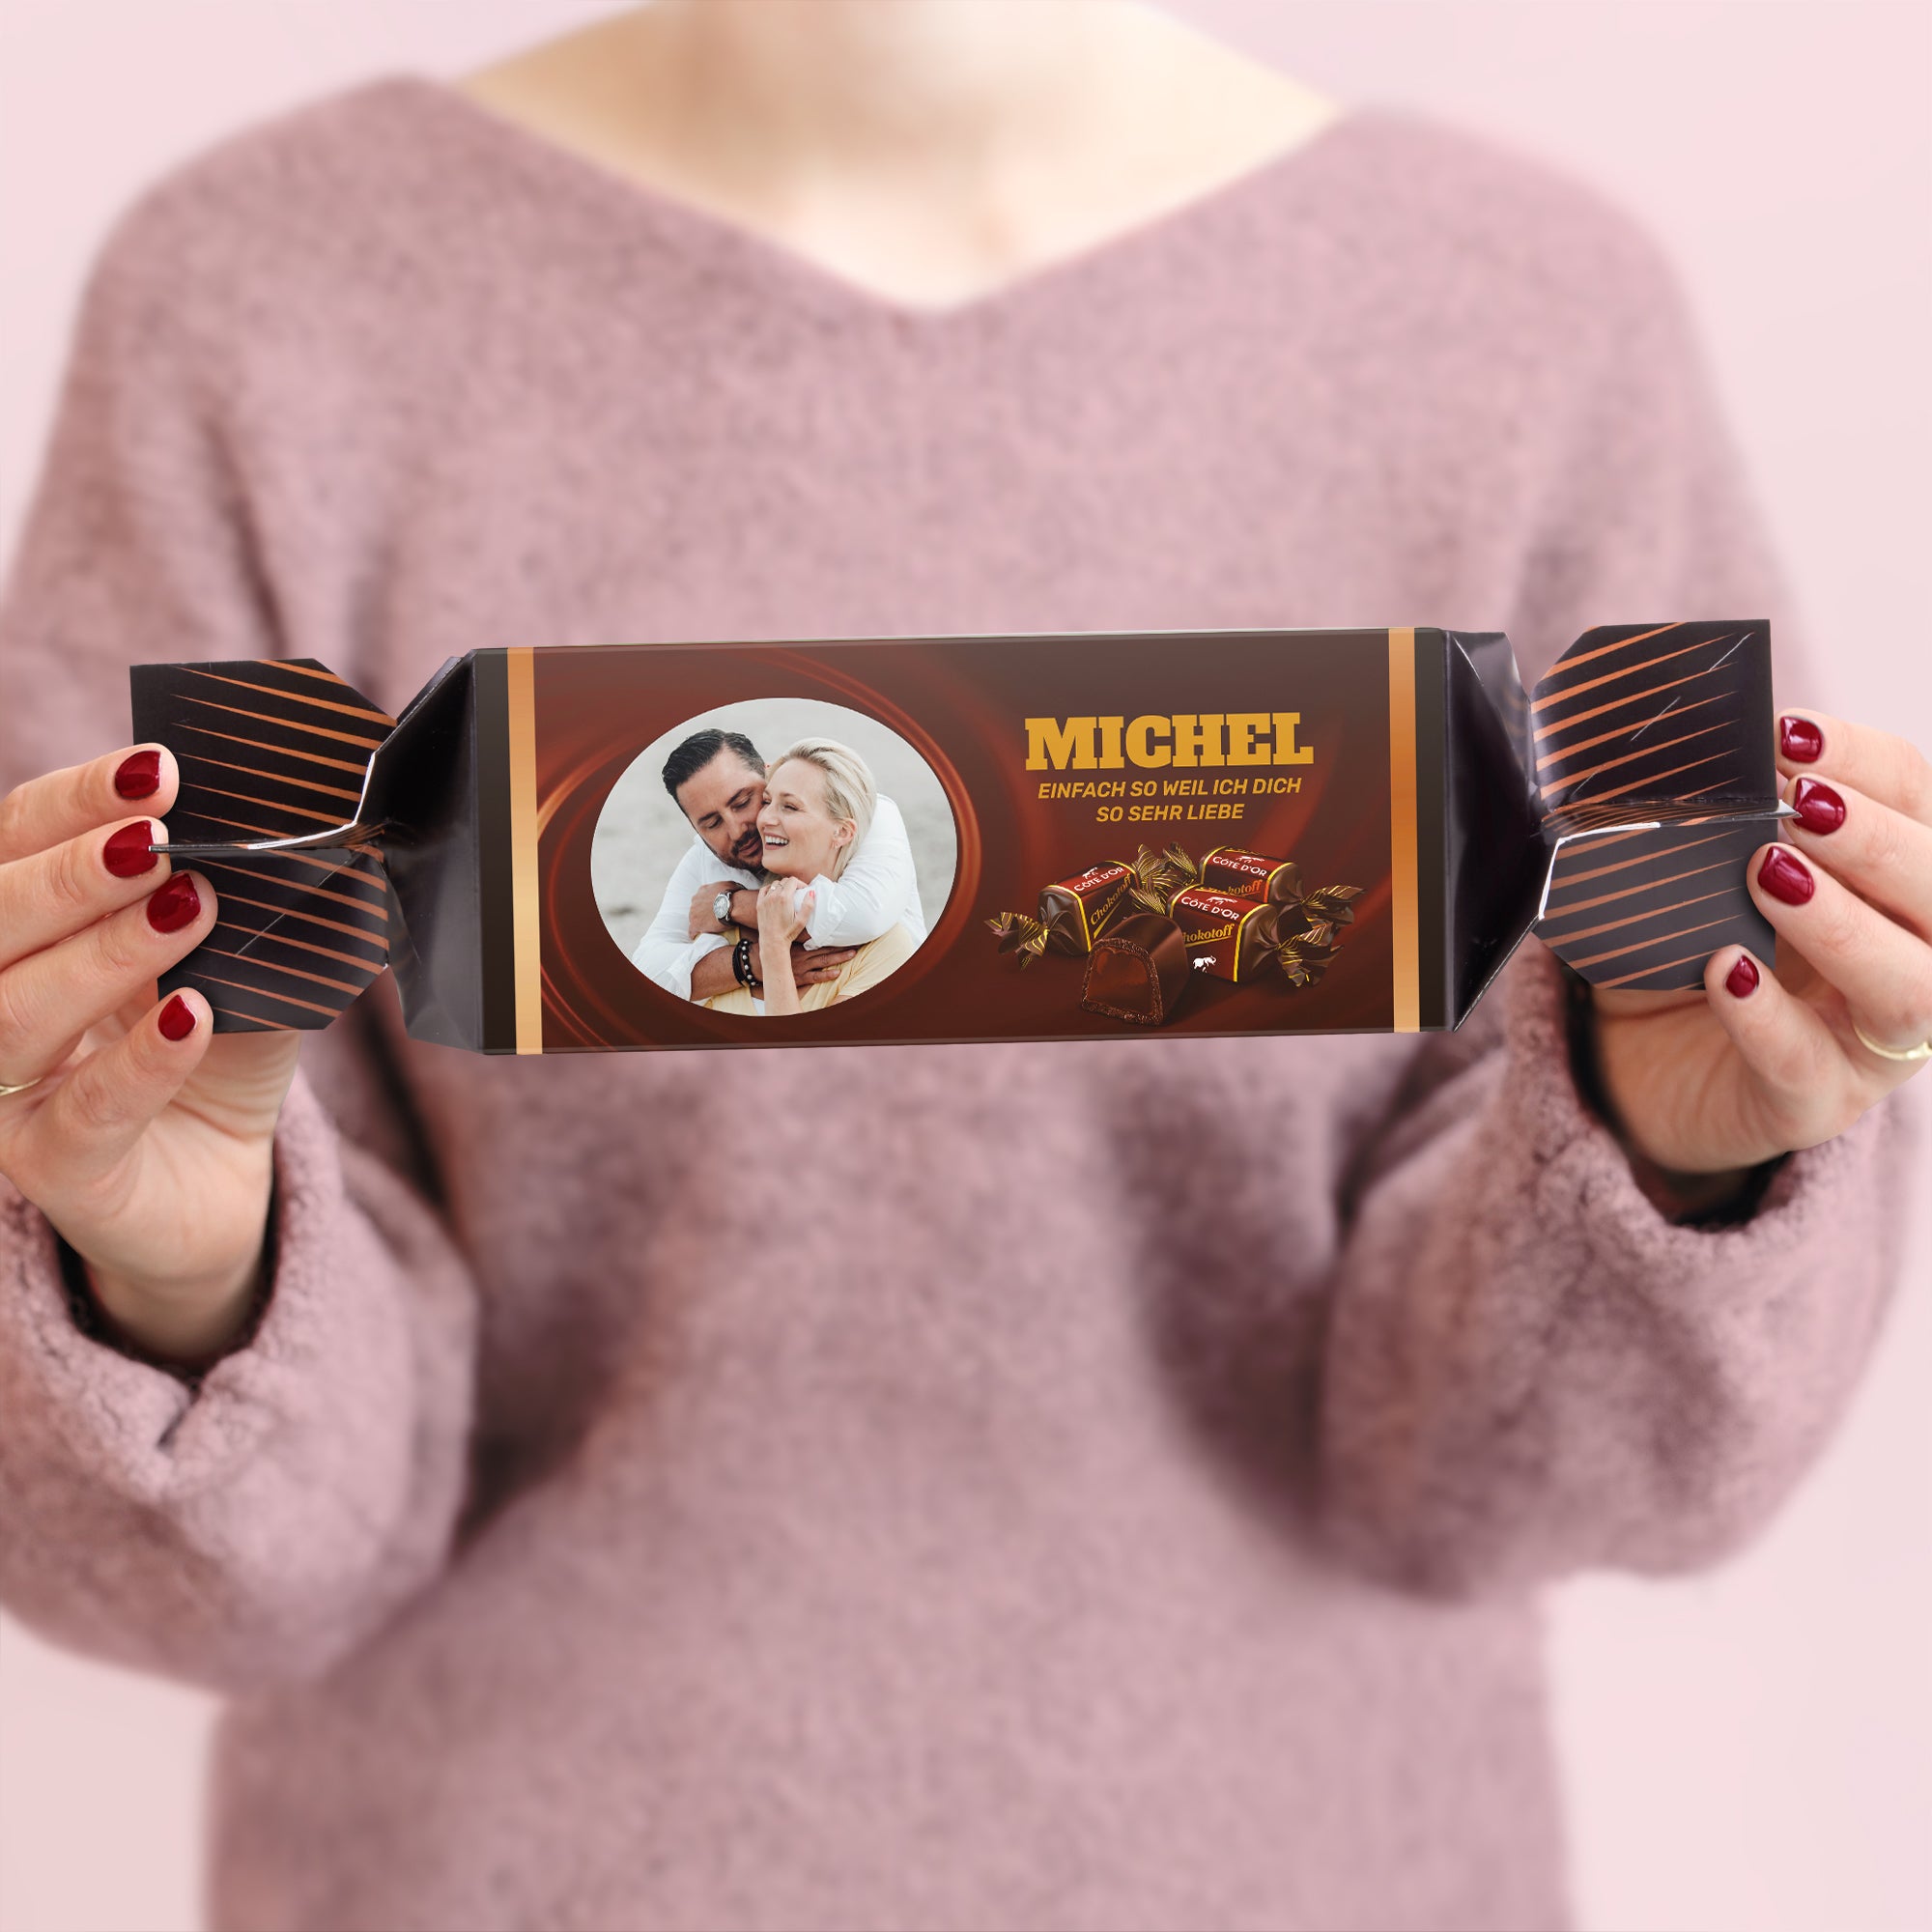 Riesen Chokotoff personalisieren mit Namen Foto  - Onlineshop YourSurprise